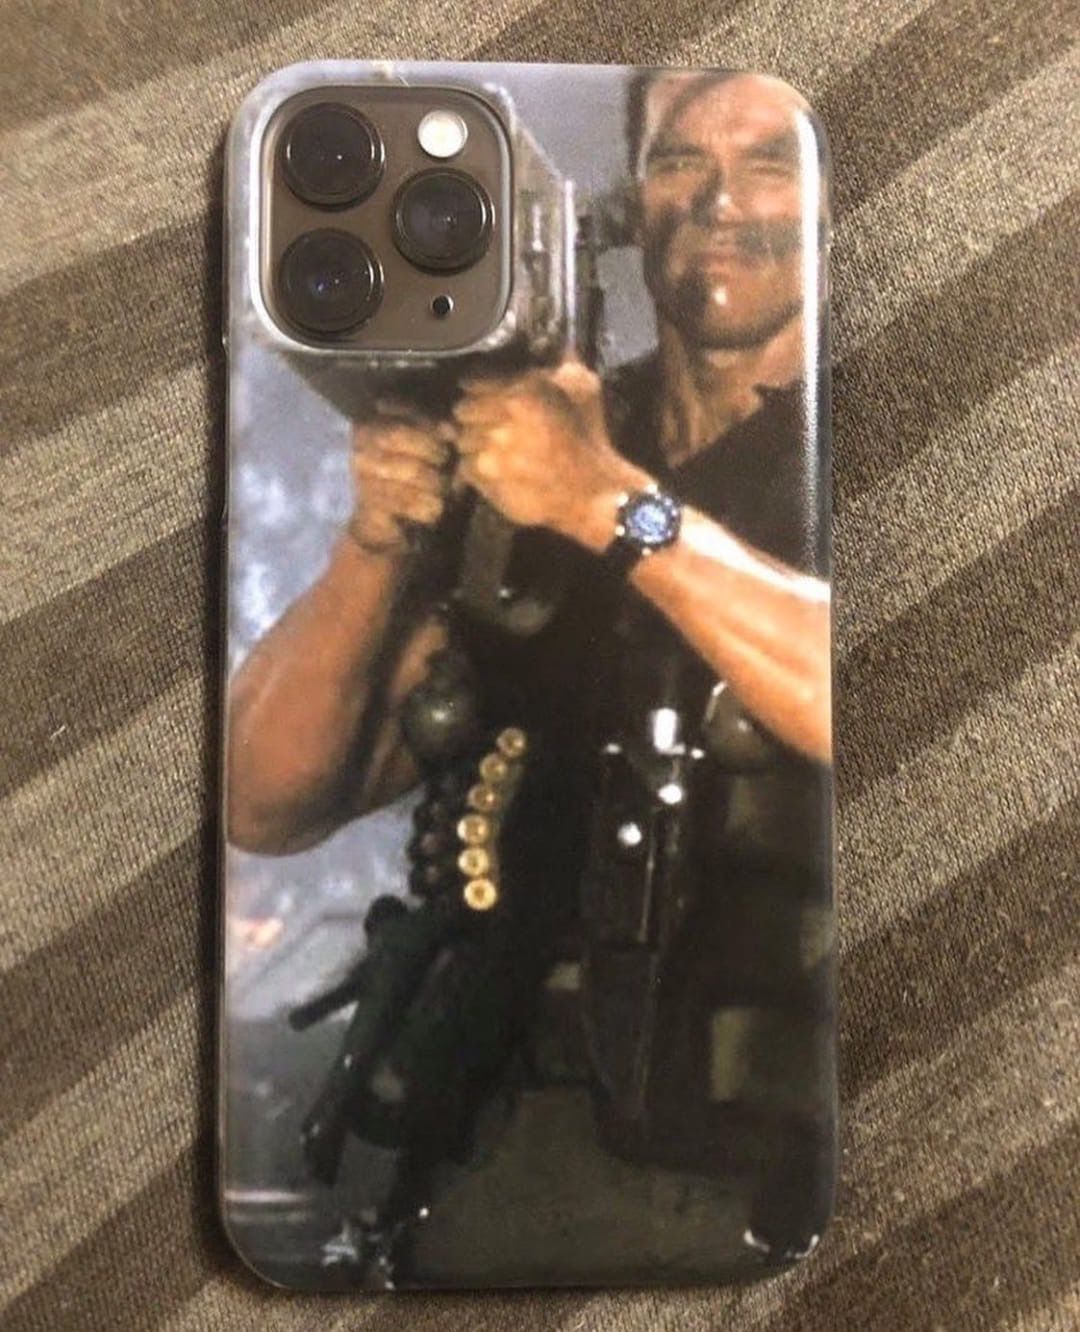 Best iPhone case I’ve seen yet